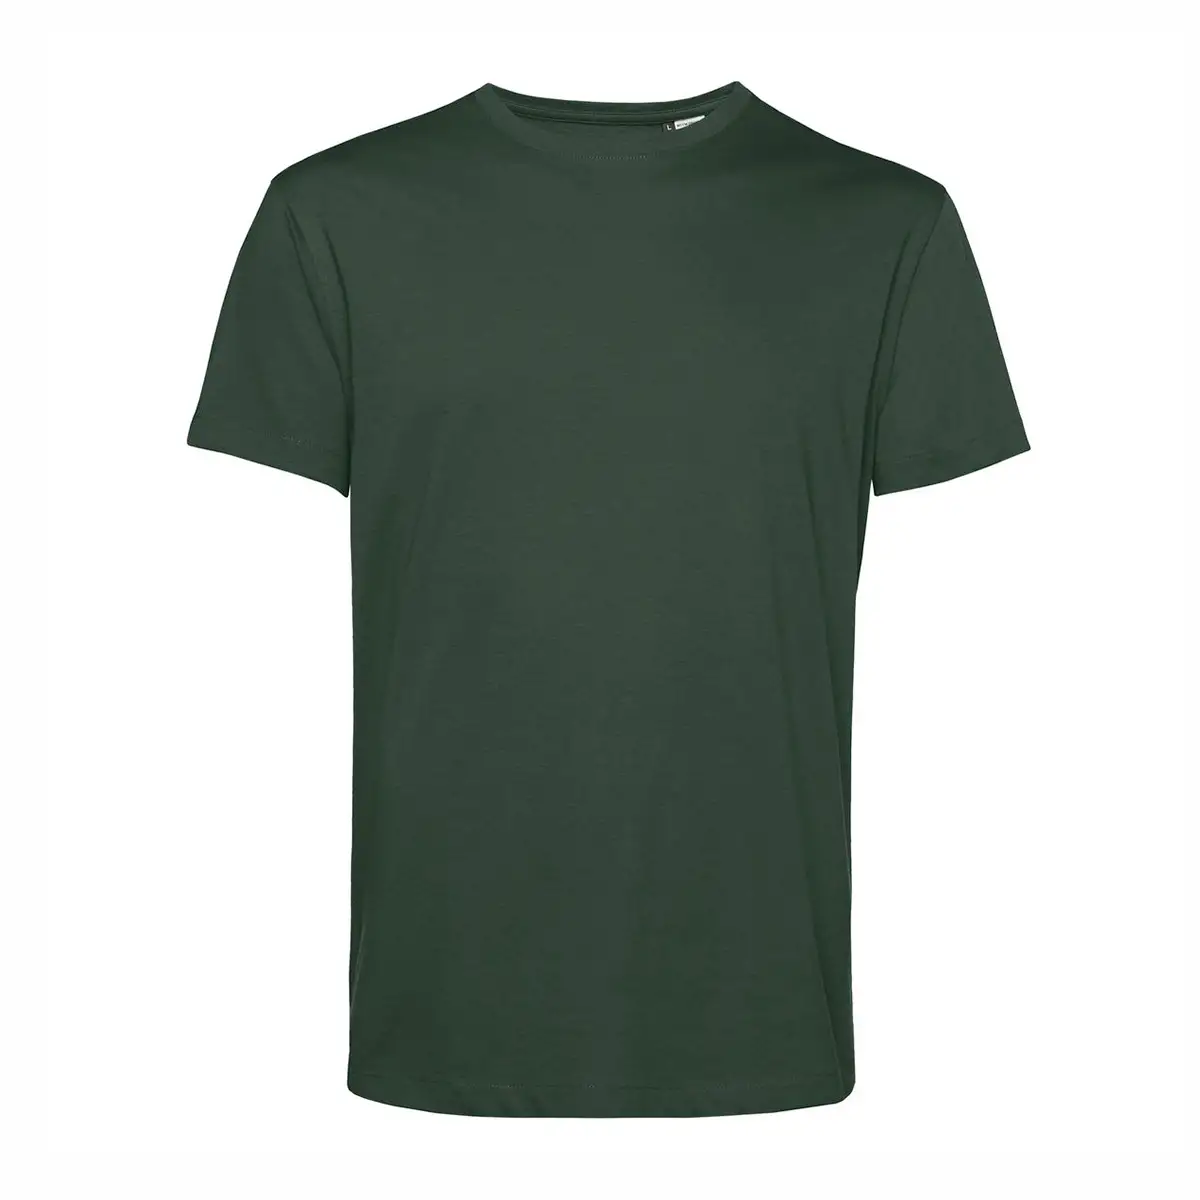 T-shirt colorata uomo cotone organico #Organic E150